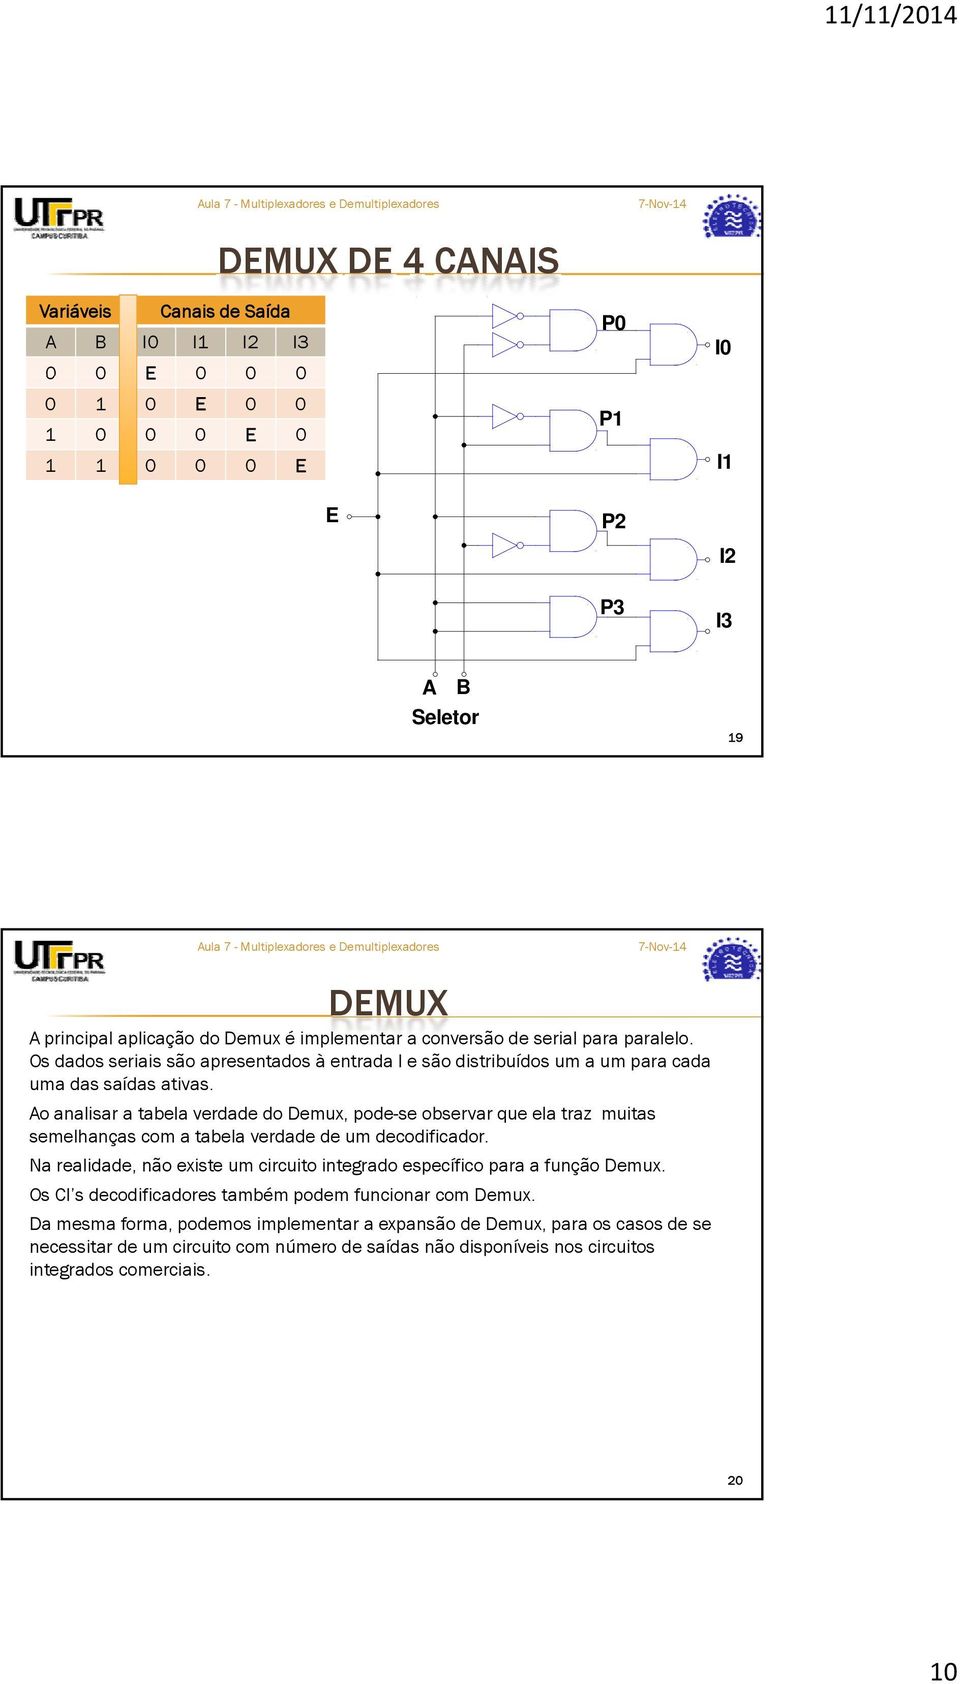 o analisar a tabela verdade do Demux, pode-se observar que ela traz muitas semelhanças com a tabela verdade de um decodificador.